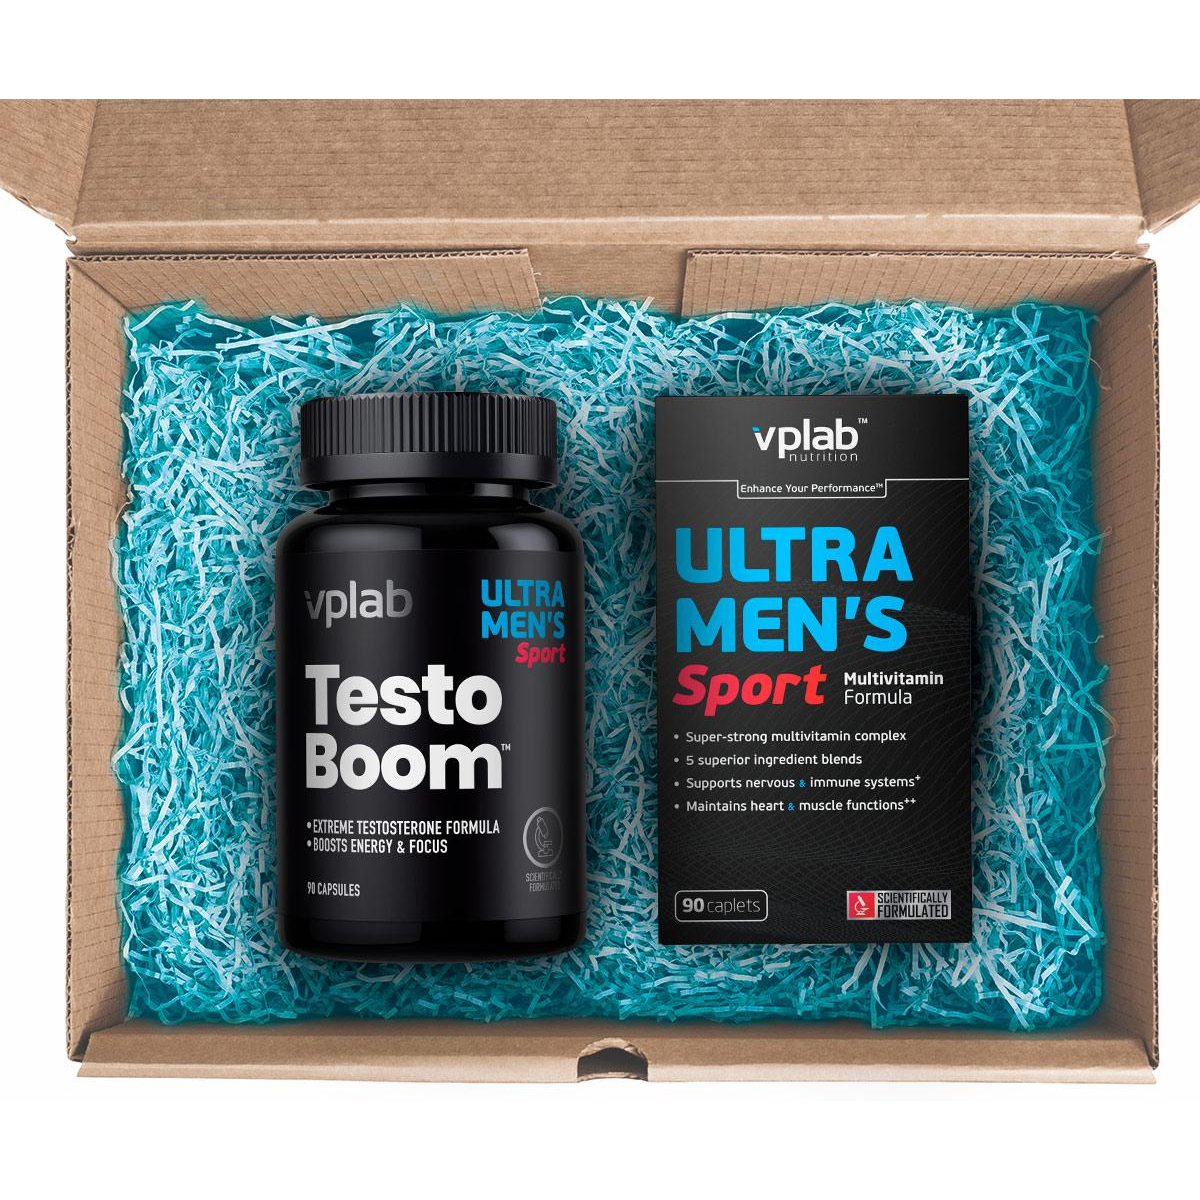 Подарочный набор для мужчин: Ultra Men’s & натуральный бустер тестостерона Testoboom , Vplab